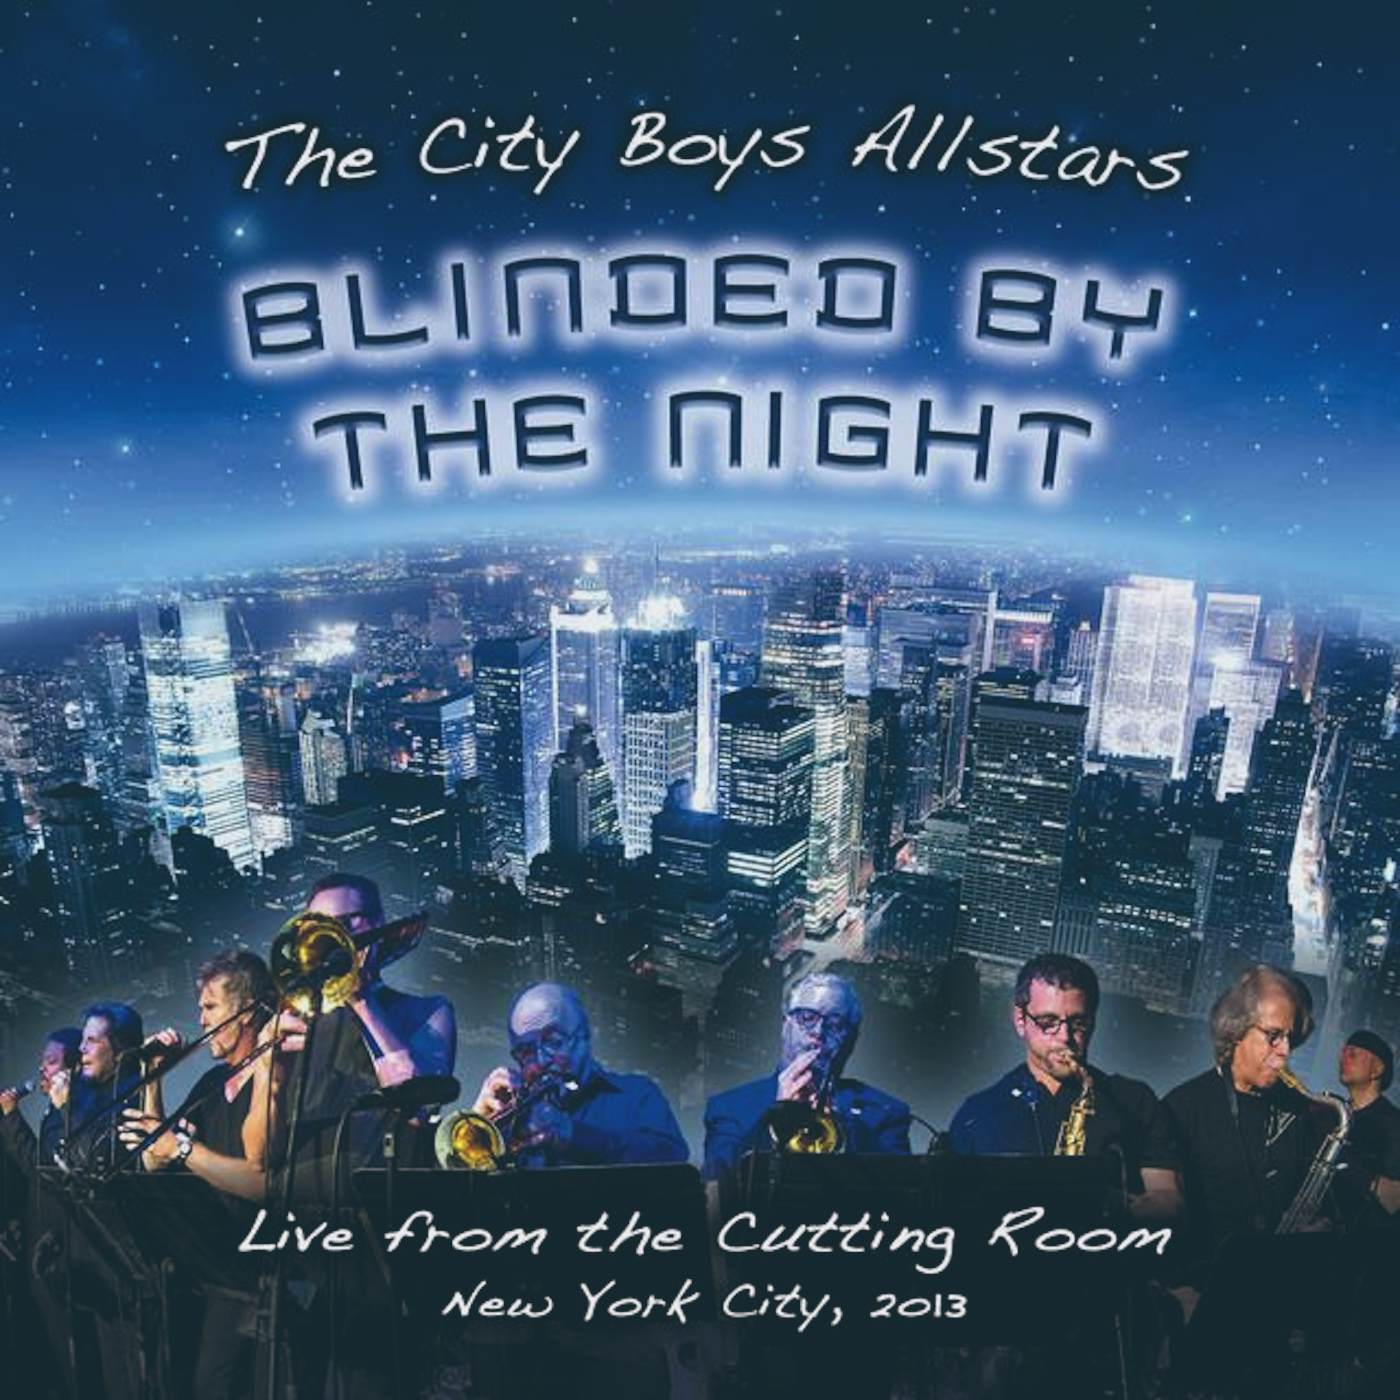 The City Boys Allstars